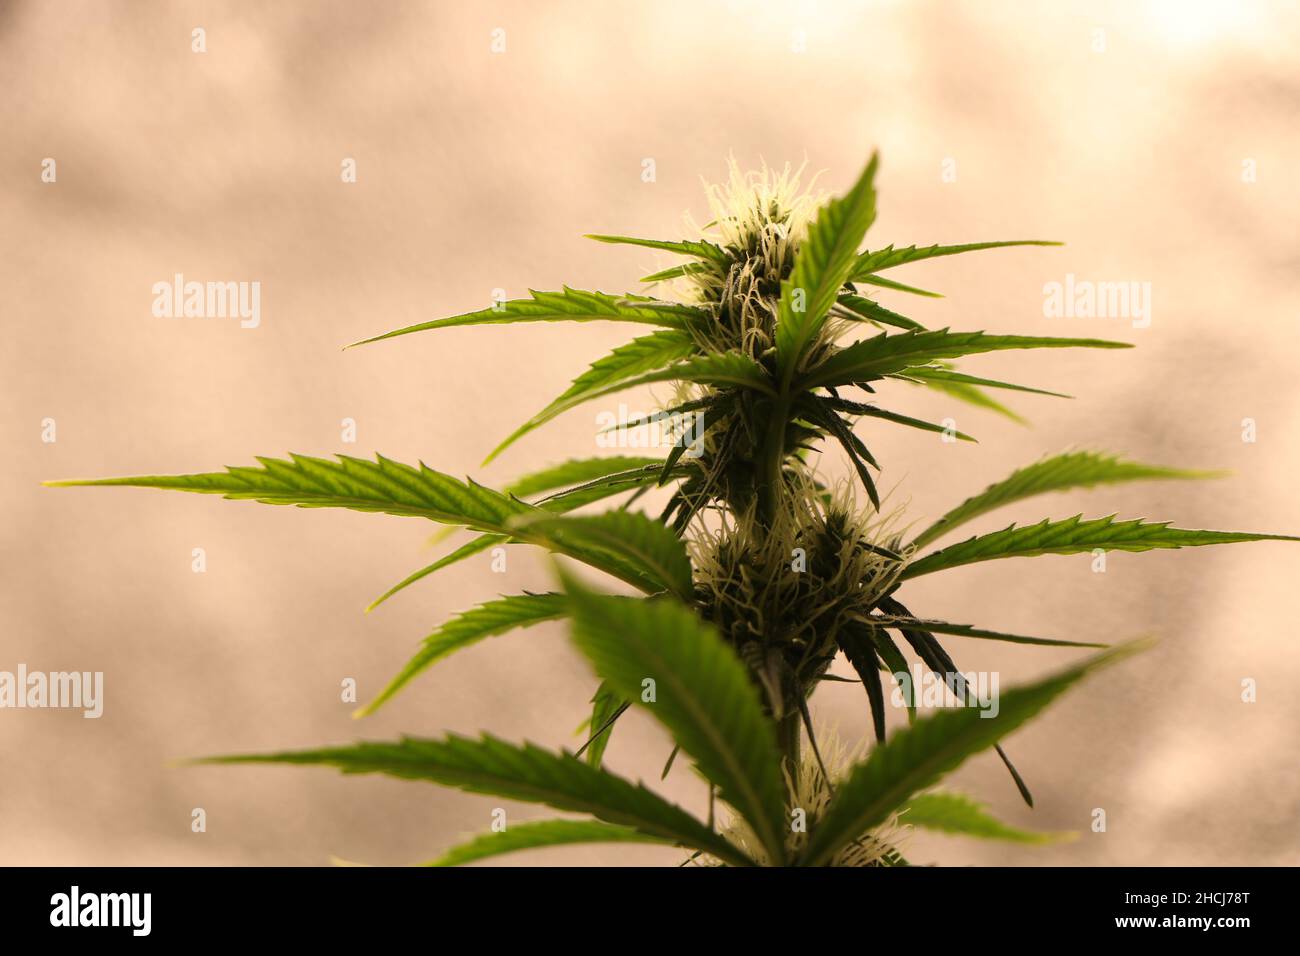 Gros plan d'une plante de cannabis marijuana au stade de la floraison.Photo de haute qualité Banque D'Images